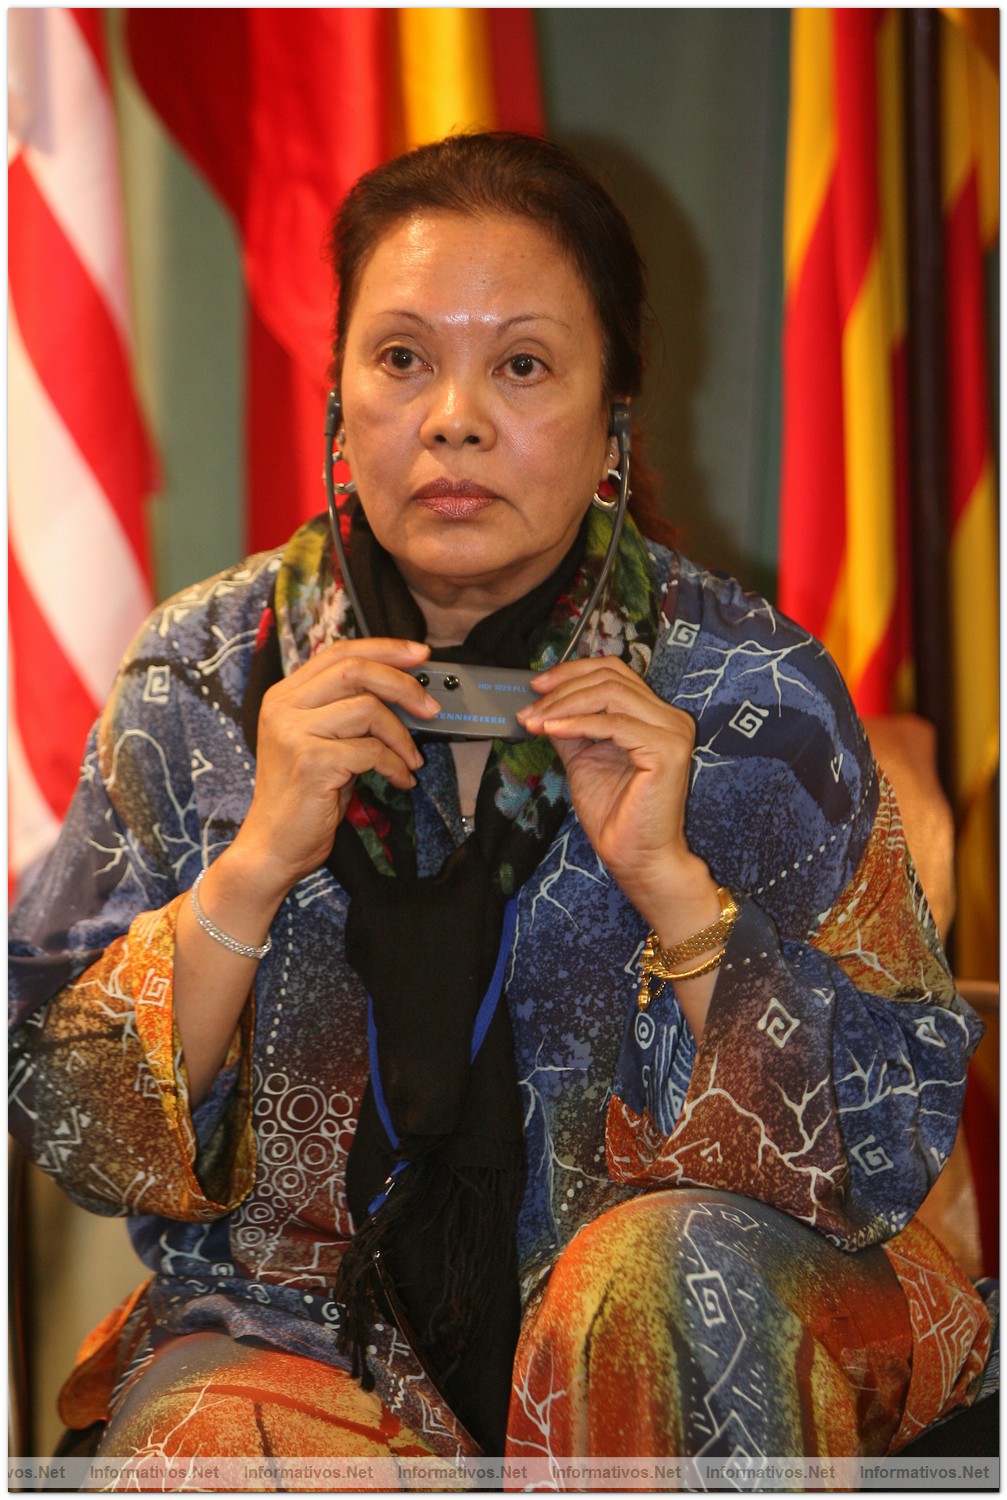 BCN13OCT010.- Presentación del patrimonio creativo del Estado de Terengganu (Malasia): Fatimah Ismail